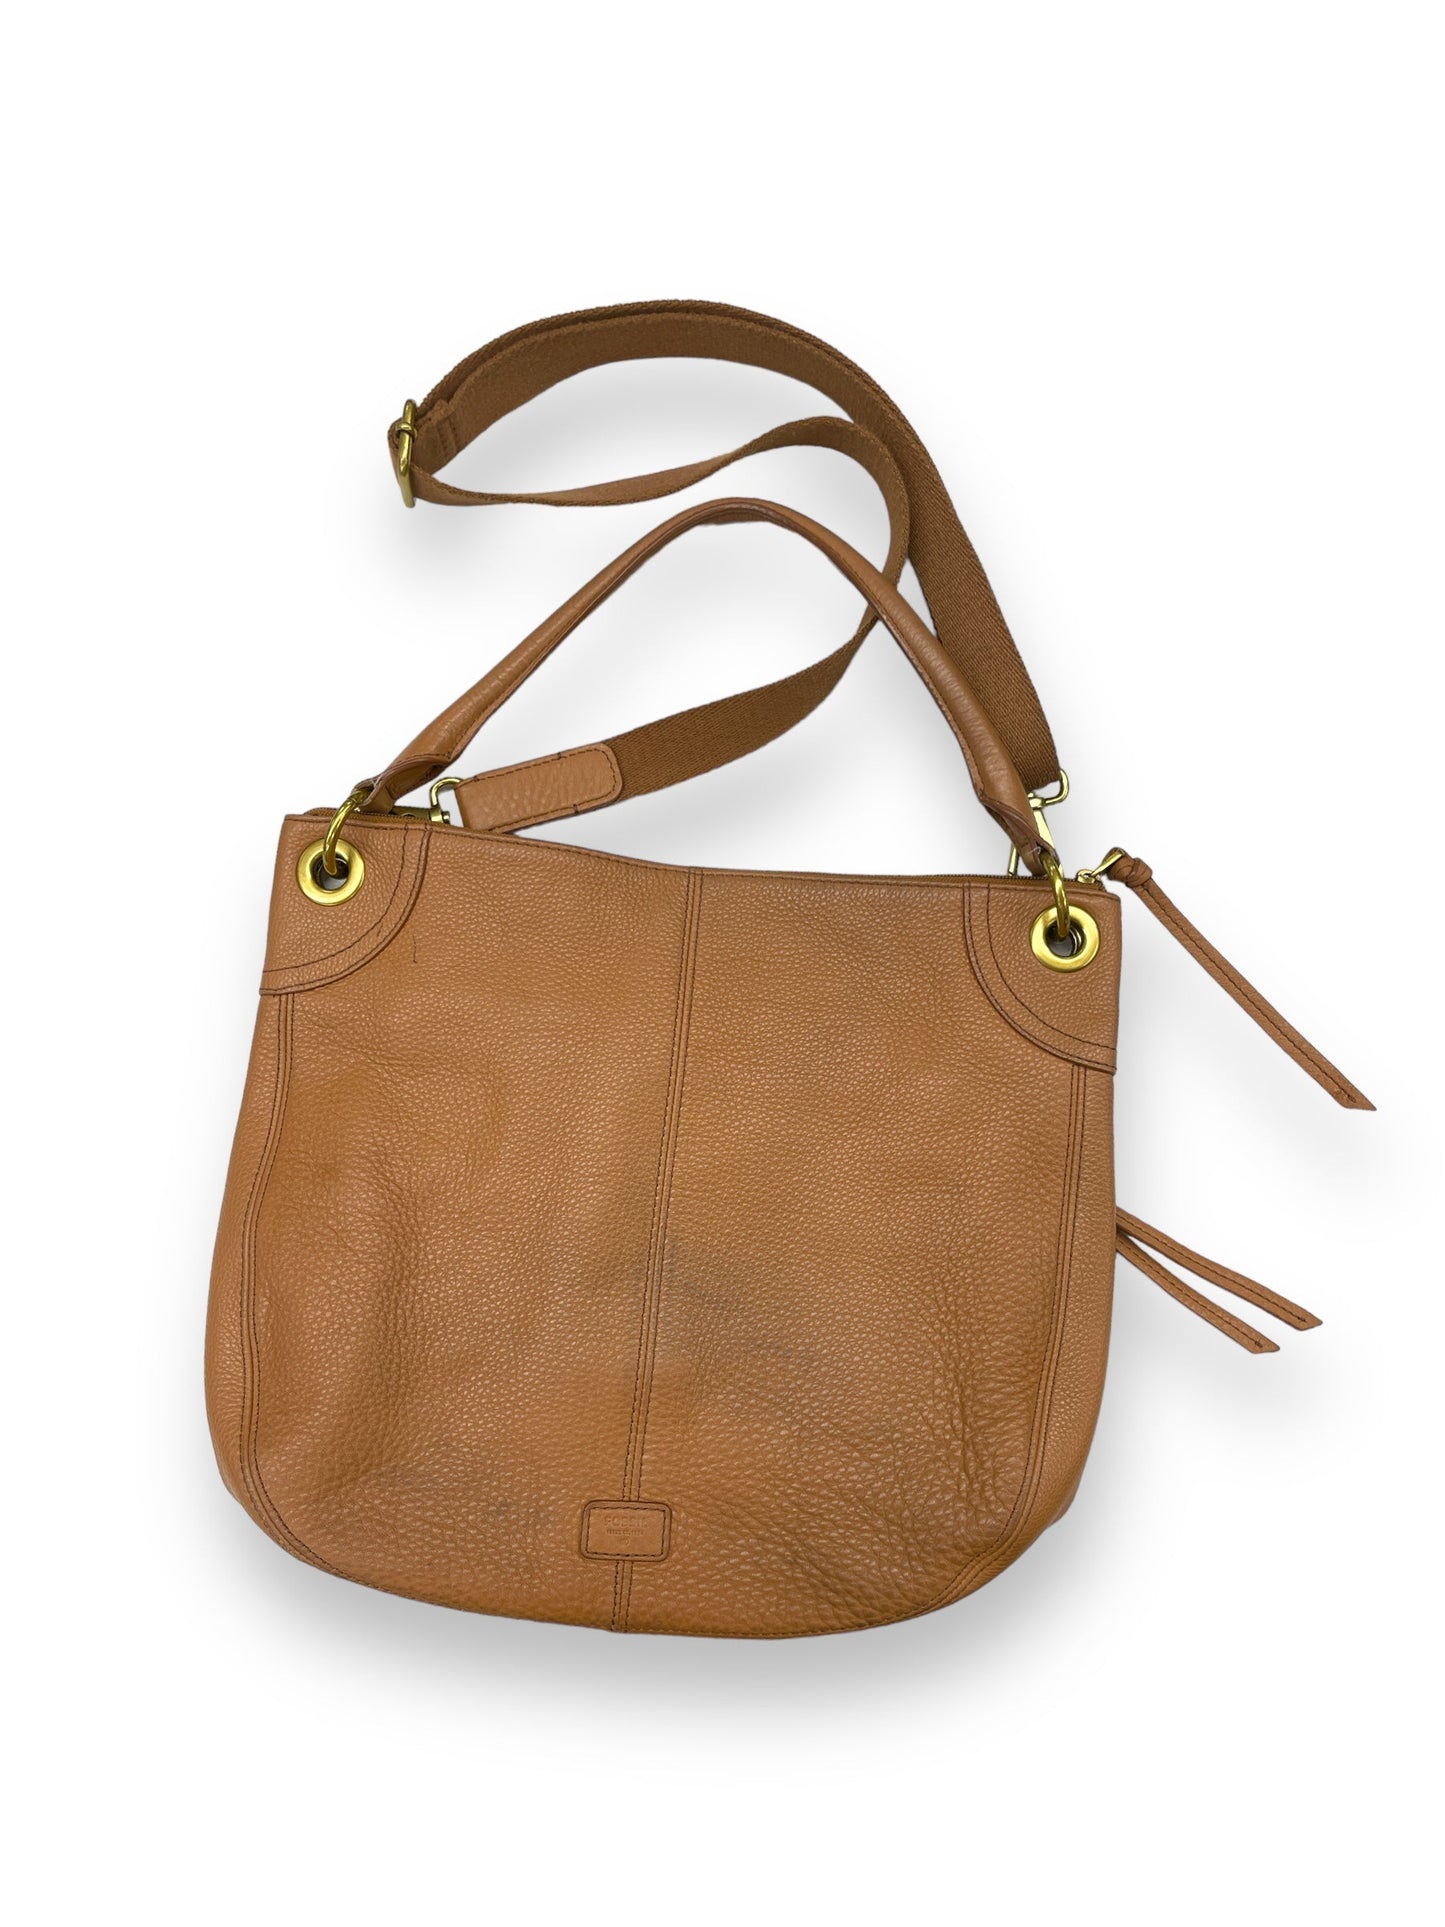 Handbag Designer By Fossil  Size: Large